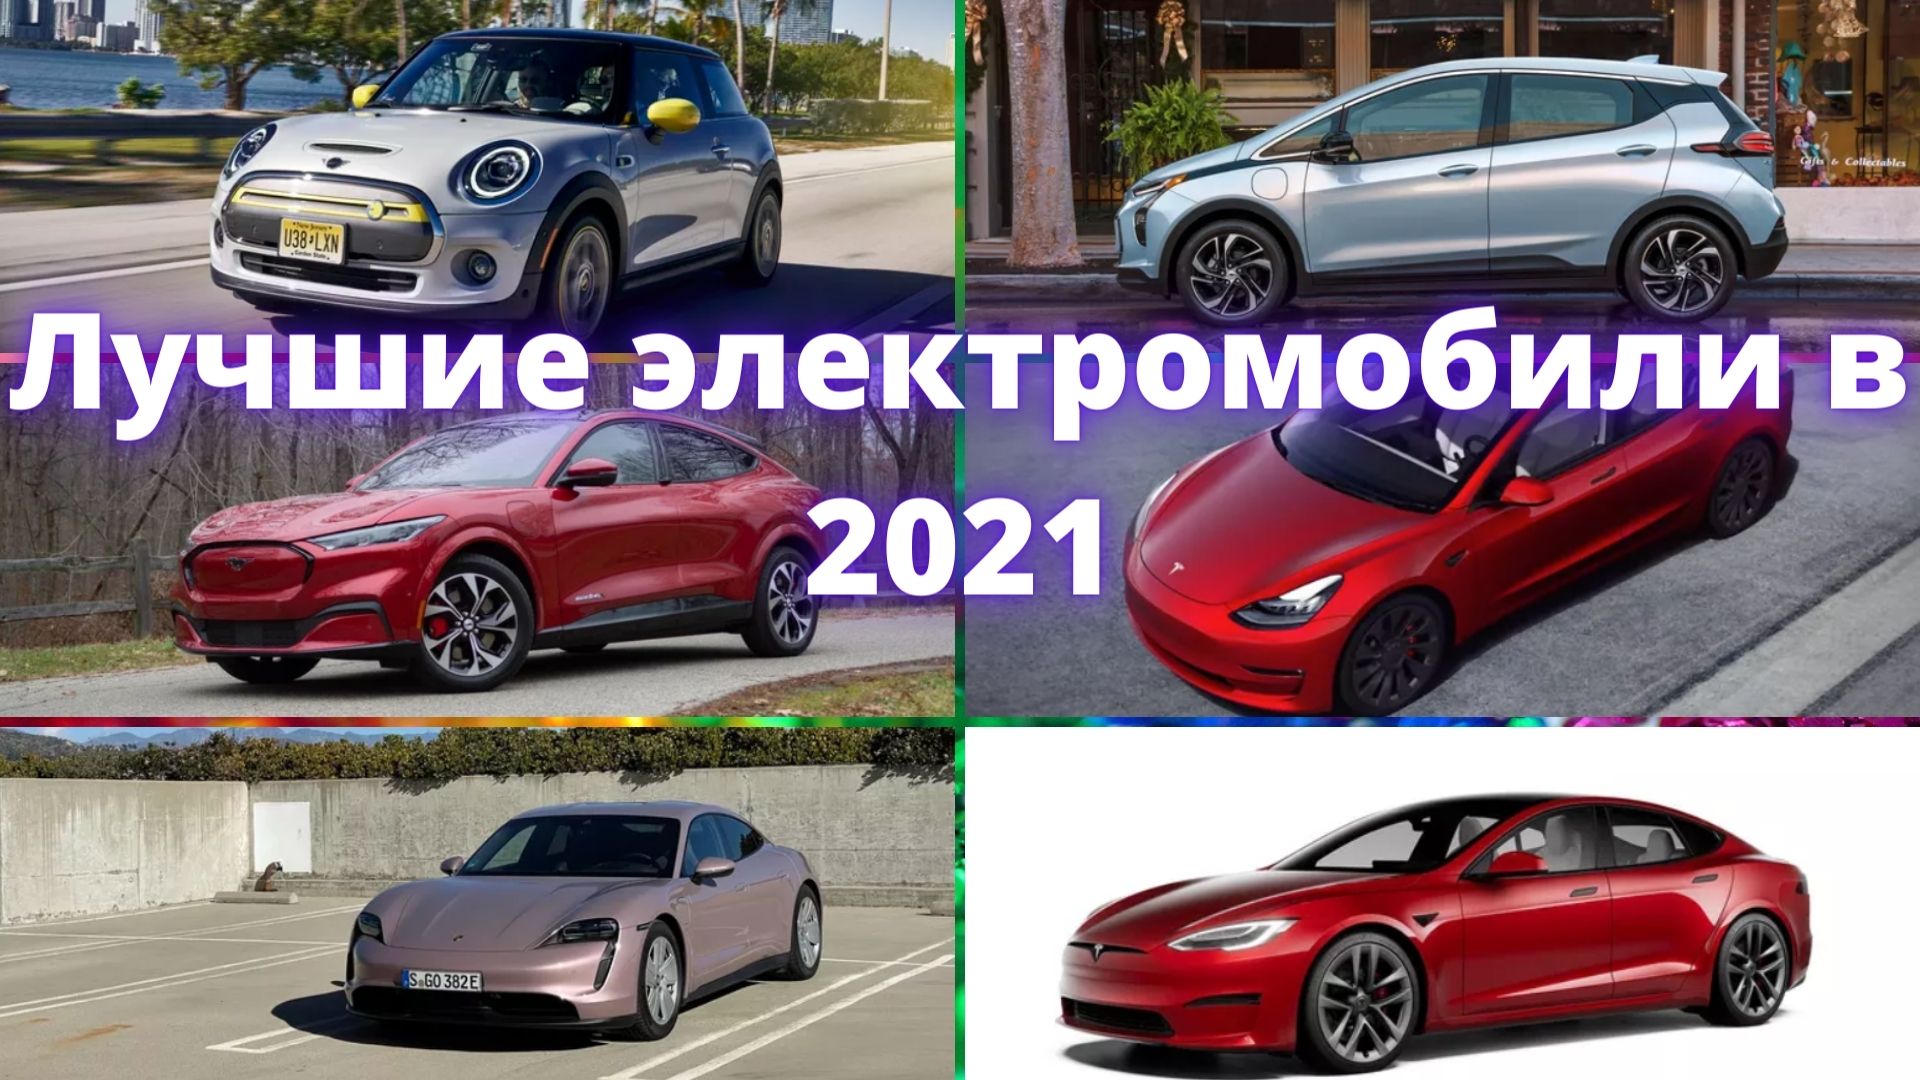 ТОП-6 Лучшие электромобили! Электромобили 2021!Лучшие электромобили в 2021 год.